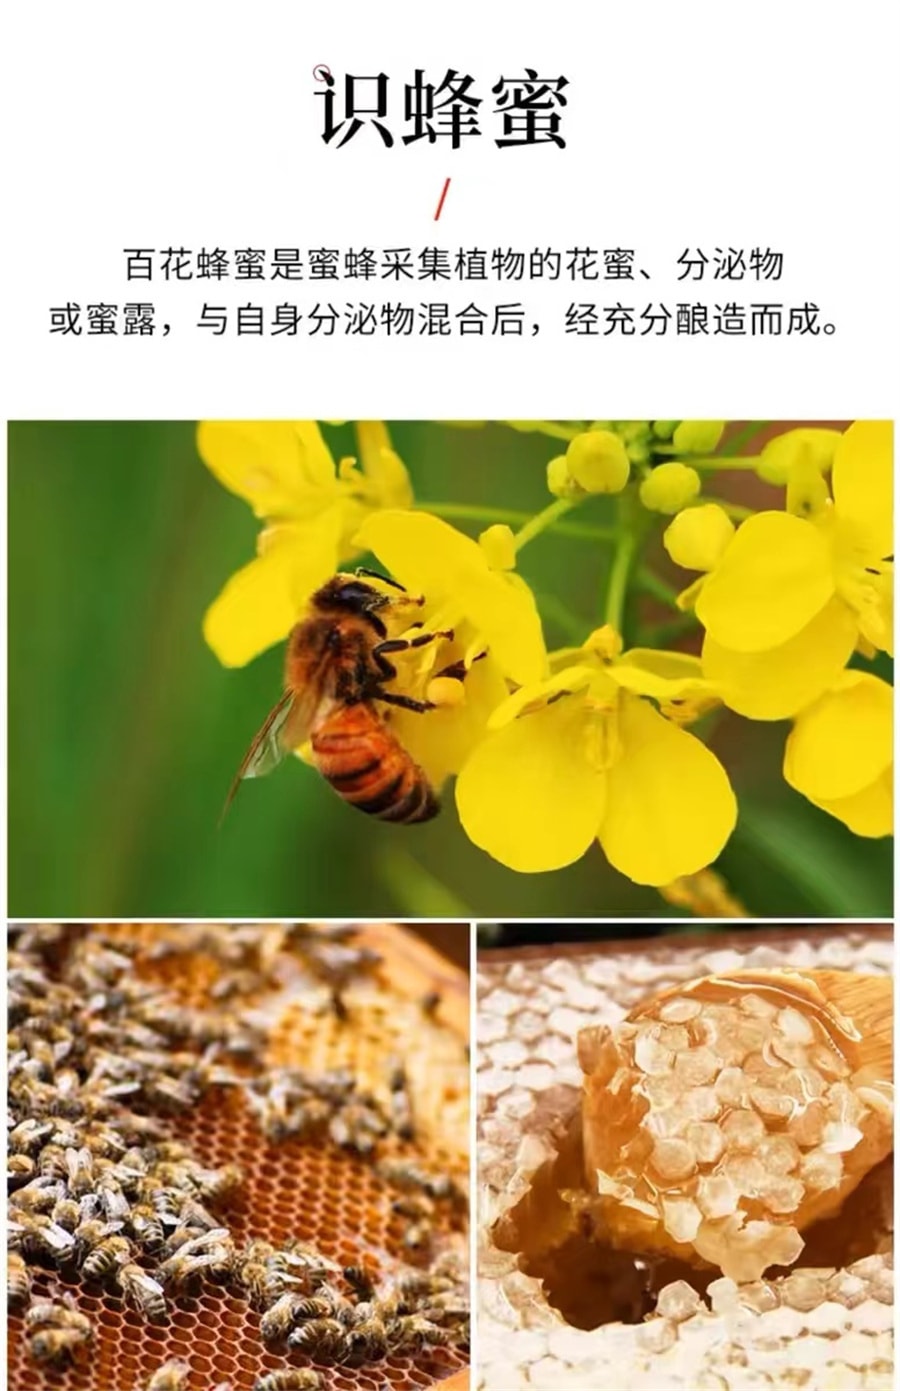 【中国直邮】百花 蜂蜜纯正蜂蜜天然蜂蜜峰蜜挤压瓶口瓶装   415g/瓶